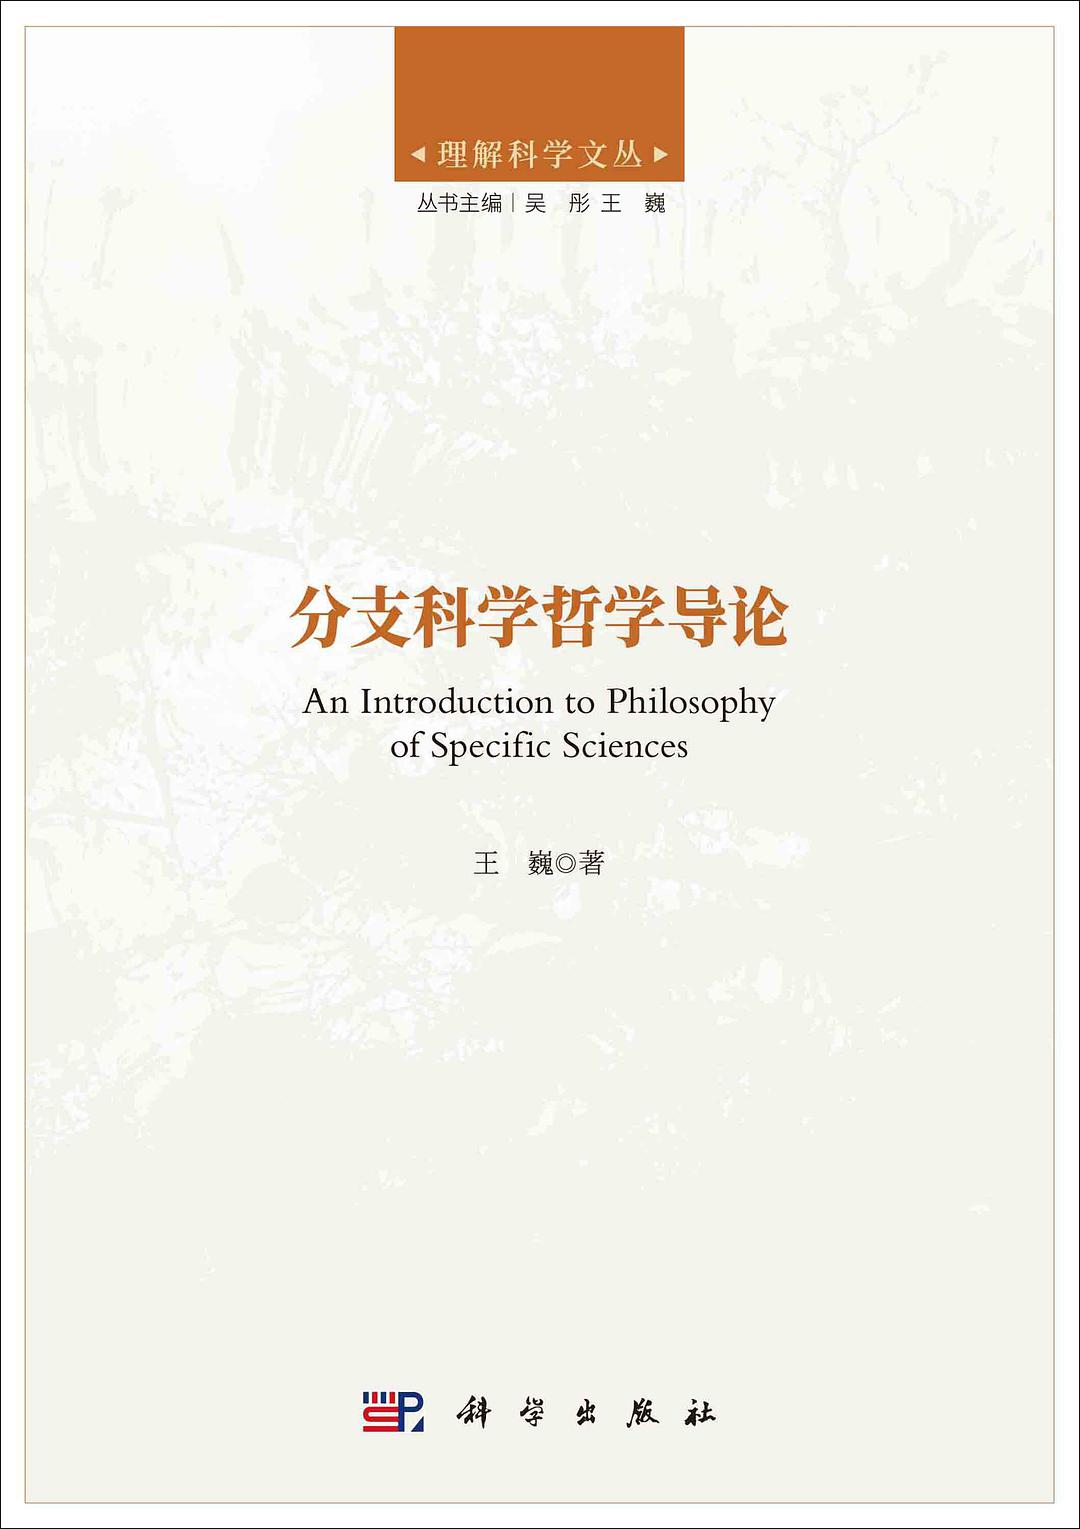 王巍教授著作《分支科学哲学导论》在科学出版社出版